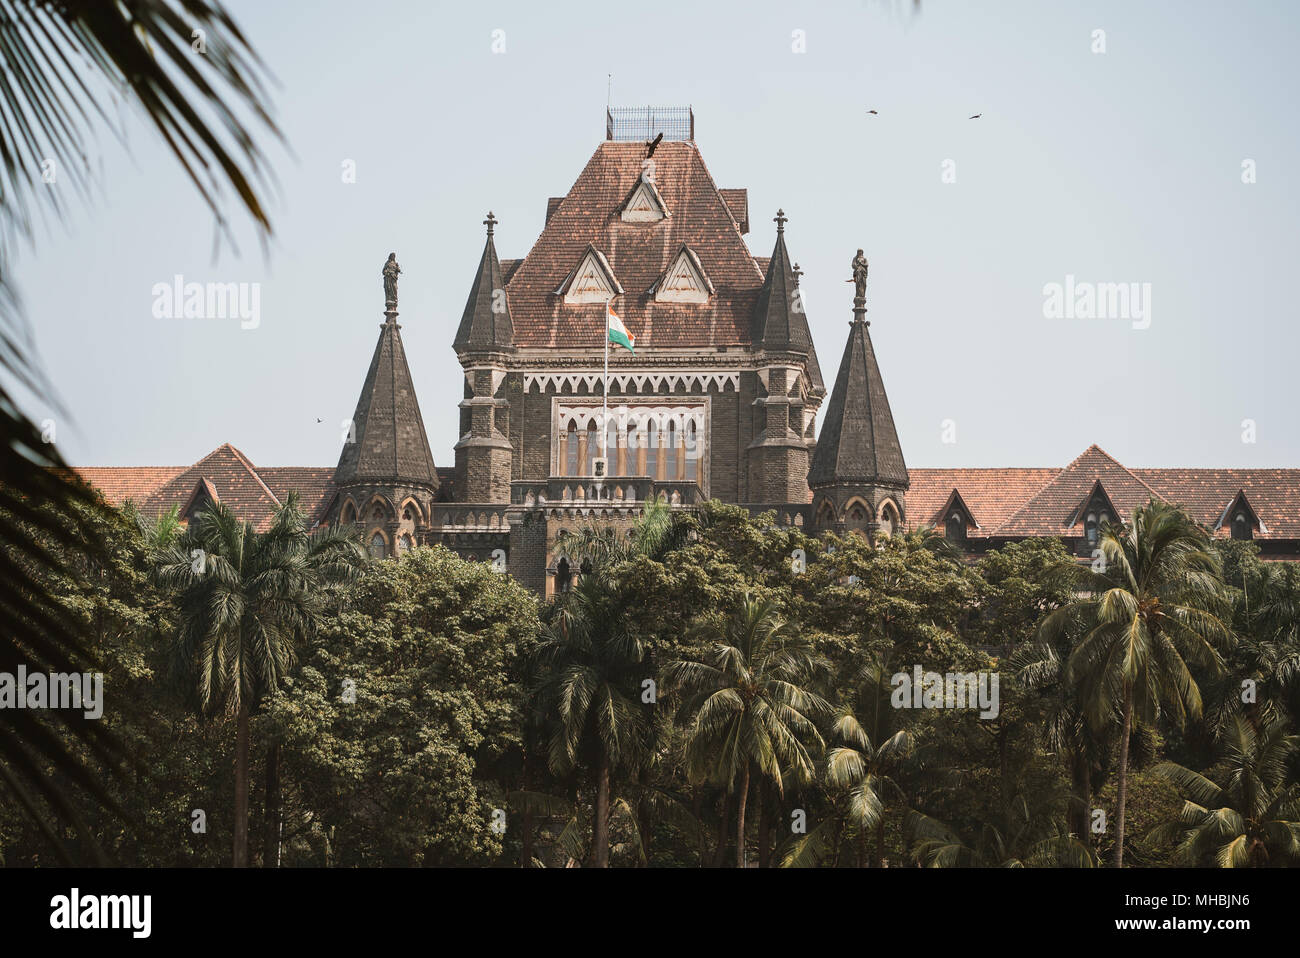 Grand campus de l'université de style gothique en brique rouge à Mumbai, Bombay, Inde Banque D'Images